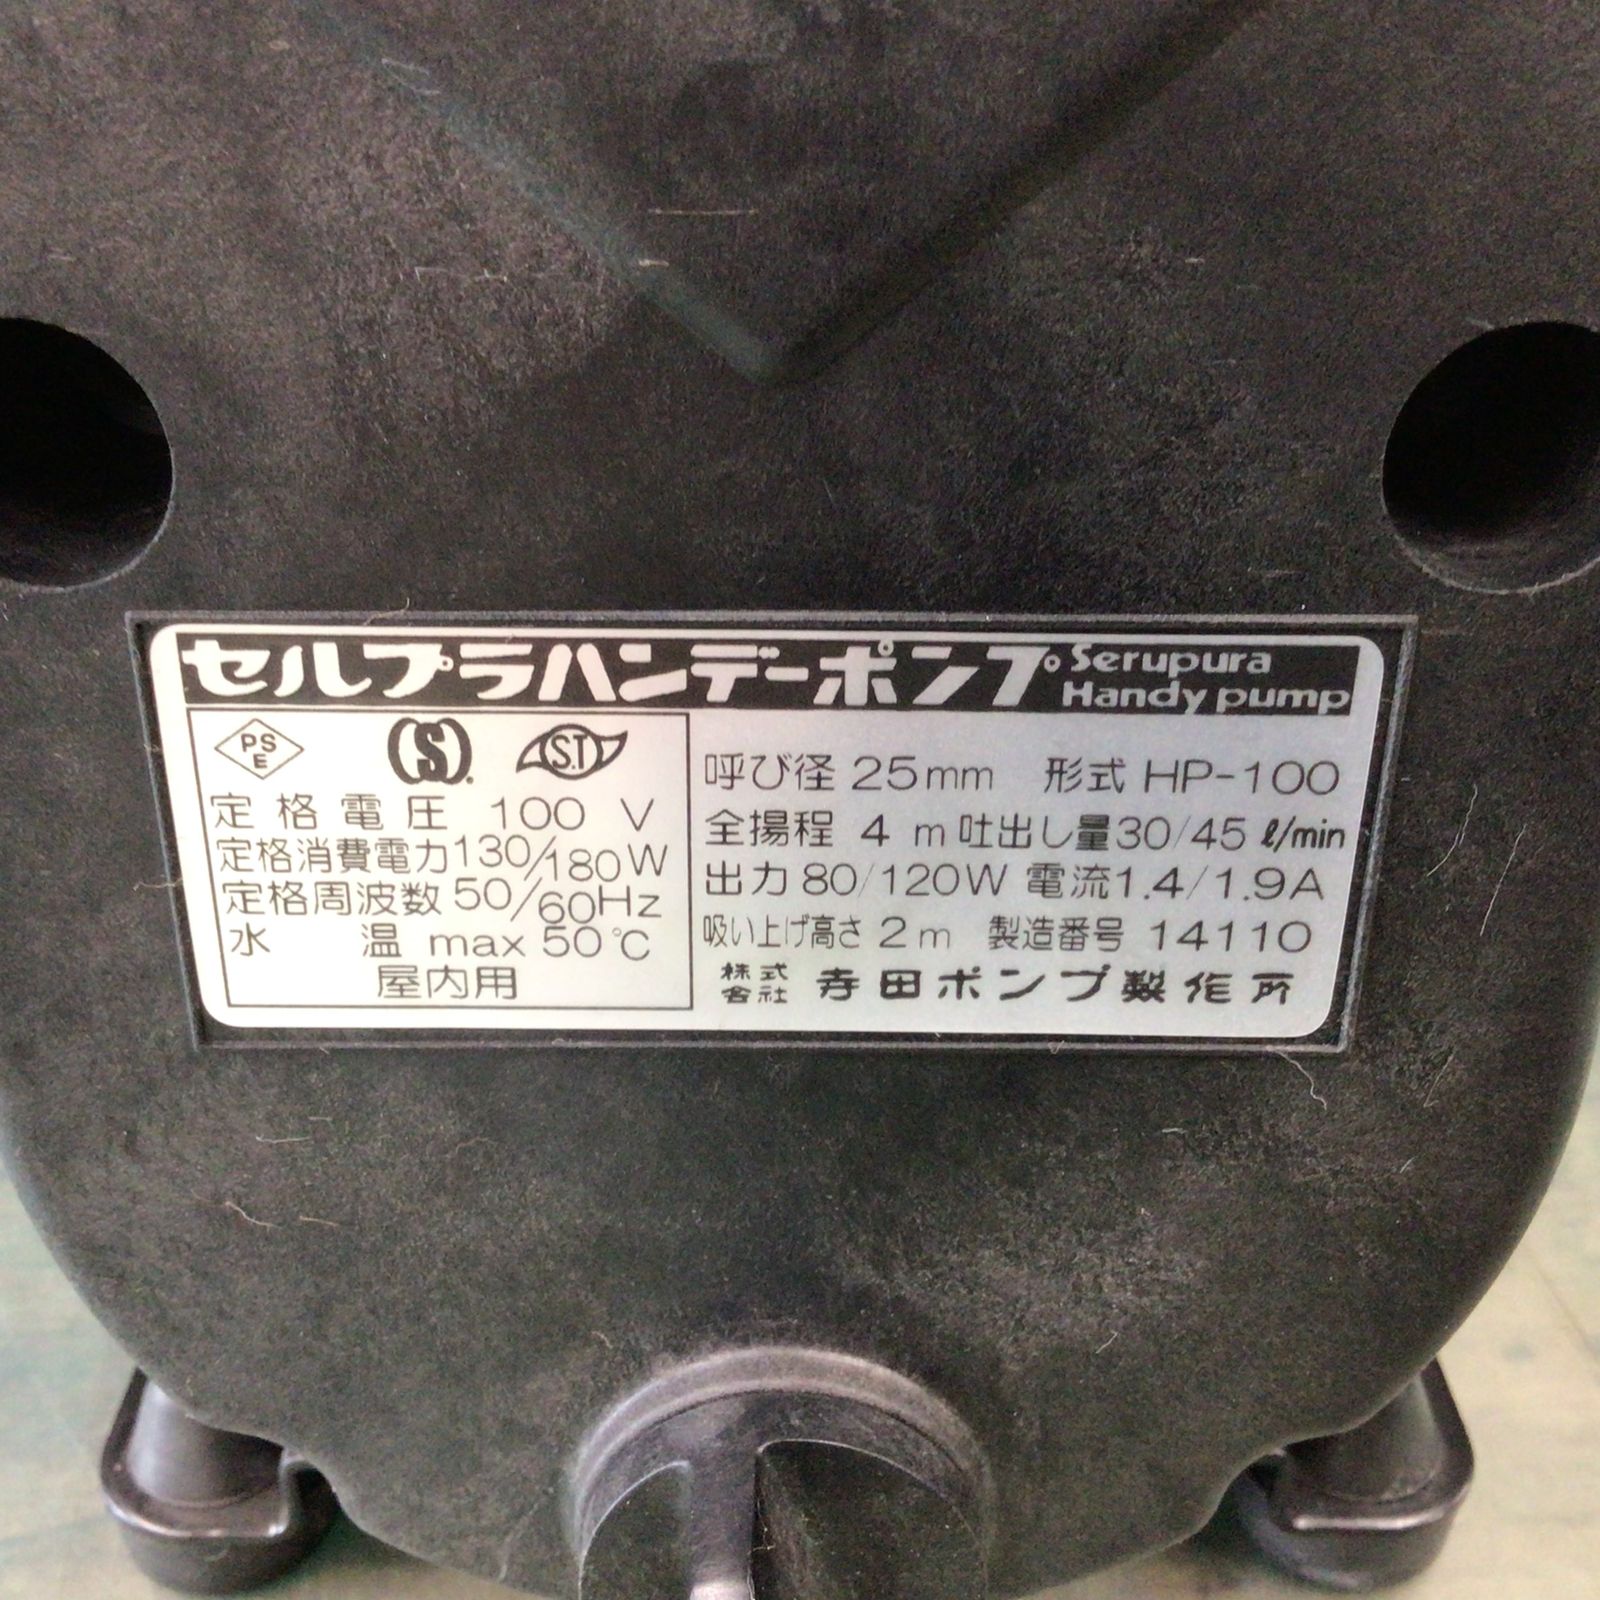 寺田ポンプ セルプラハンディポンプ HP-10U 【東大和店】 - メルカリ